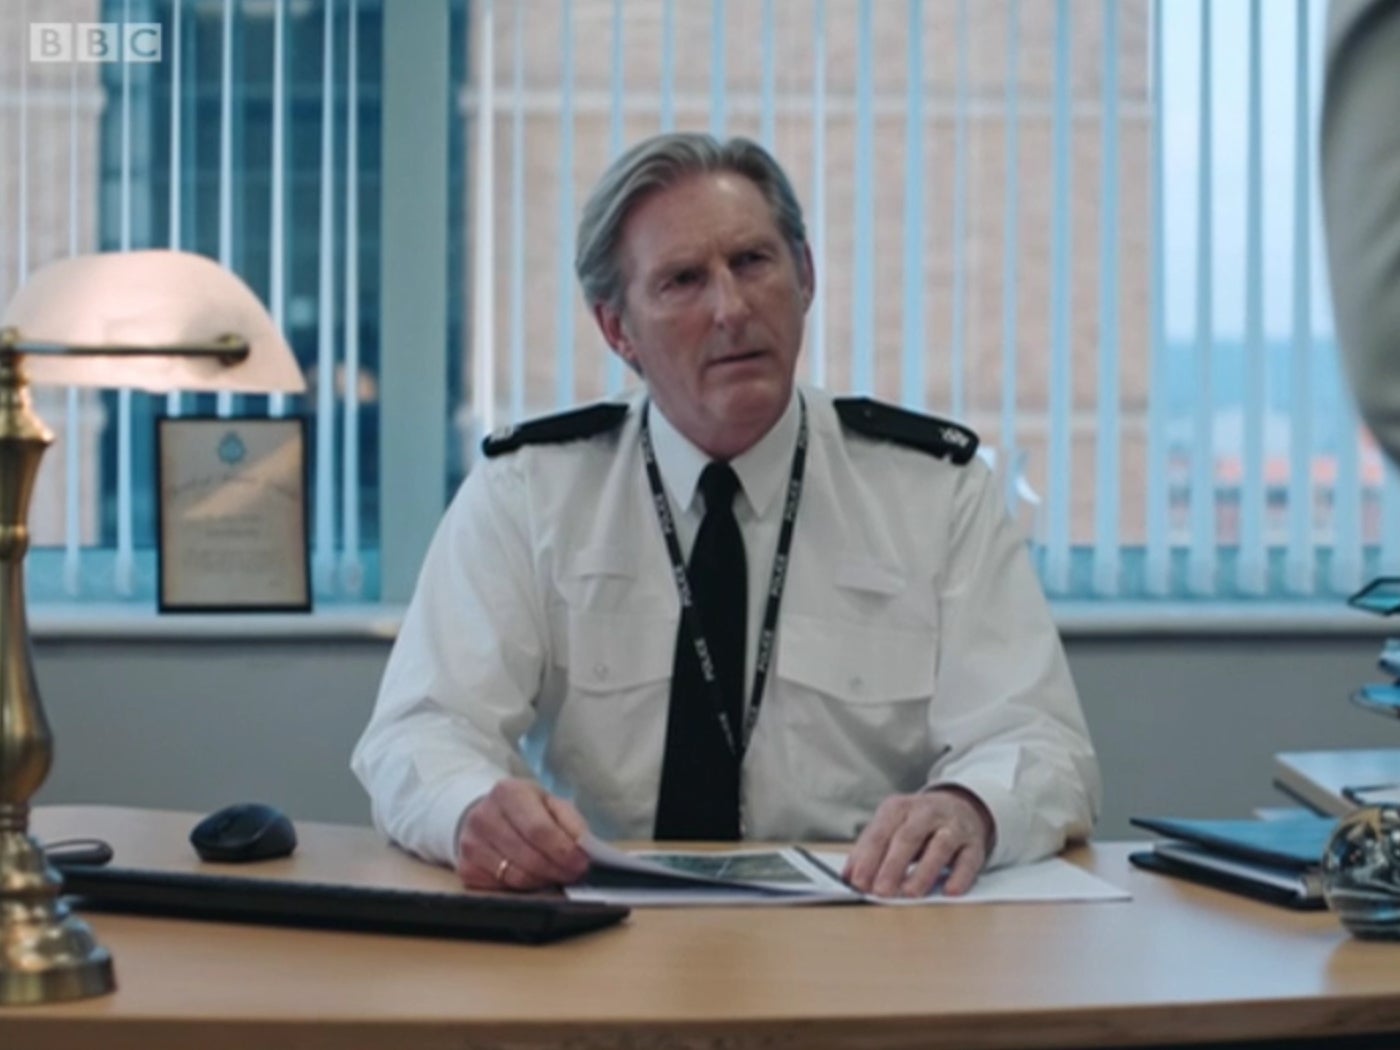 Adrian Dunbar as Ted Hastings in Line of Duty